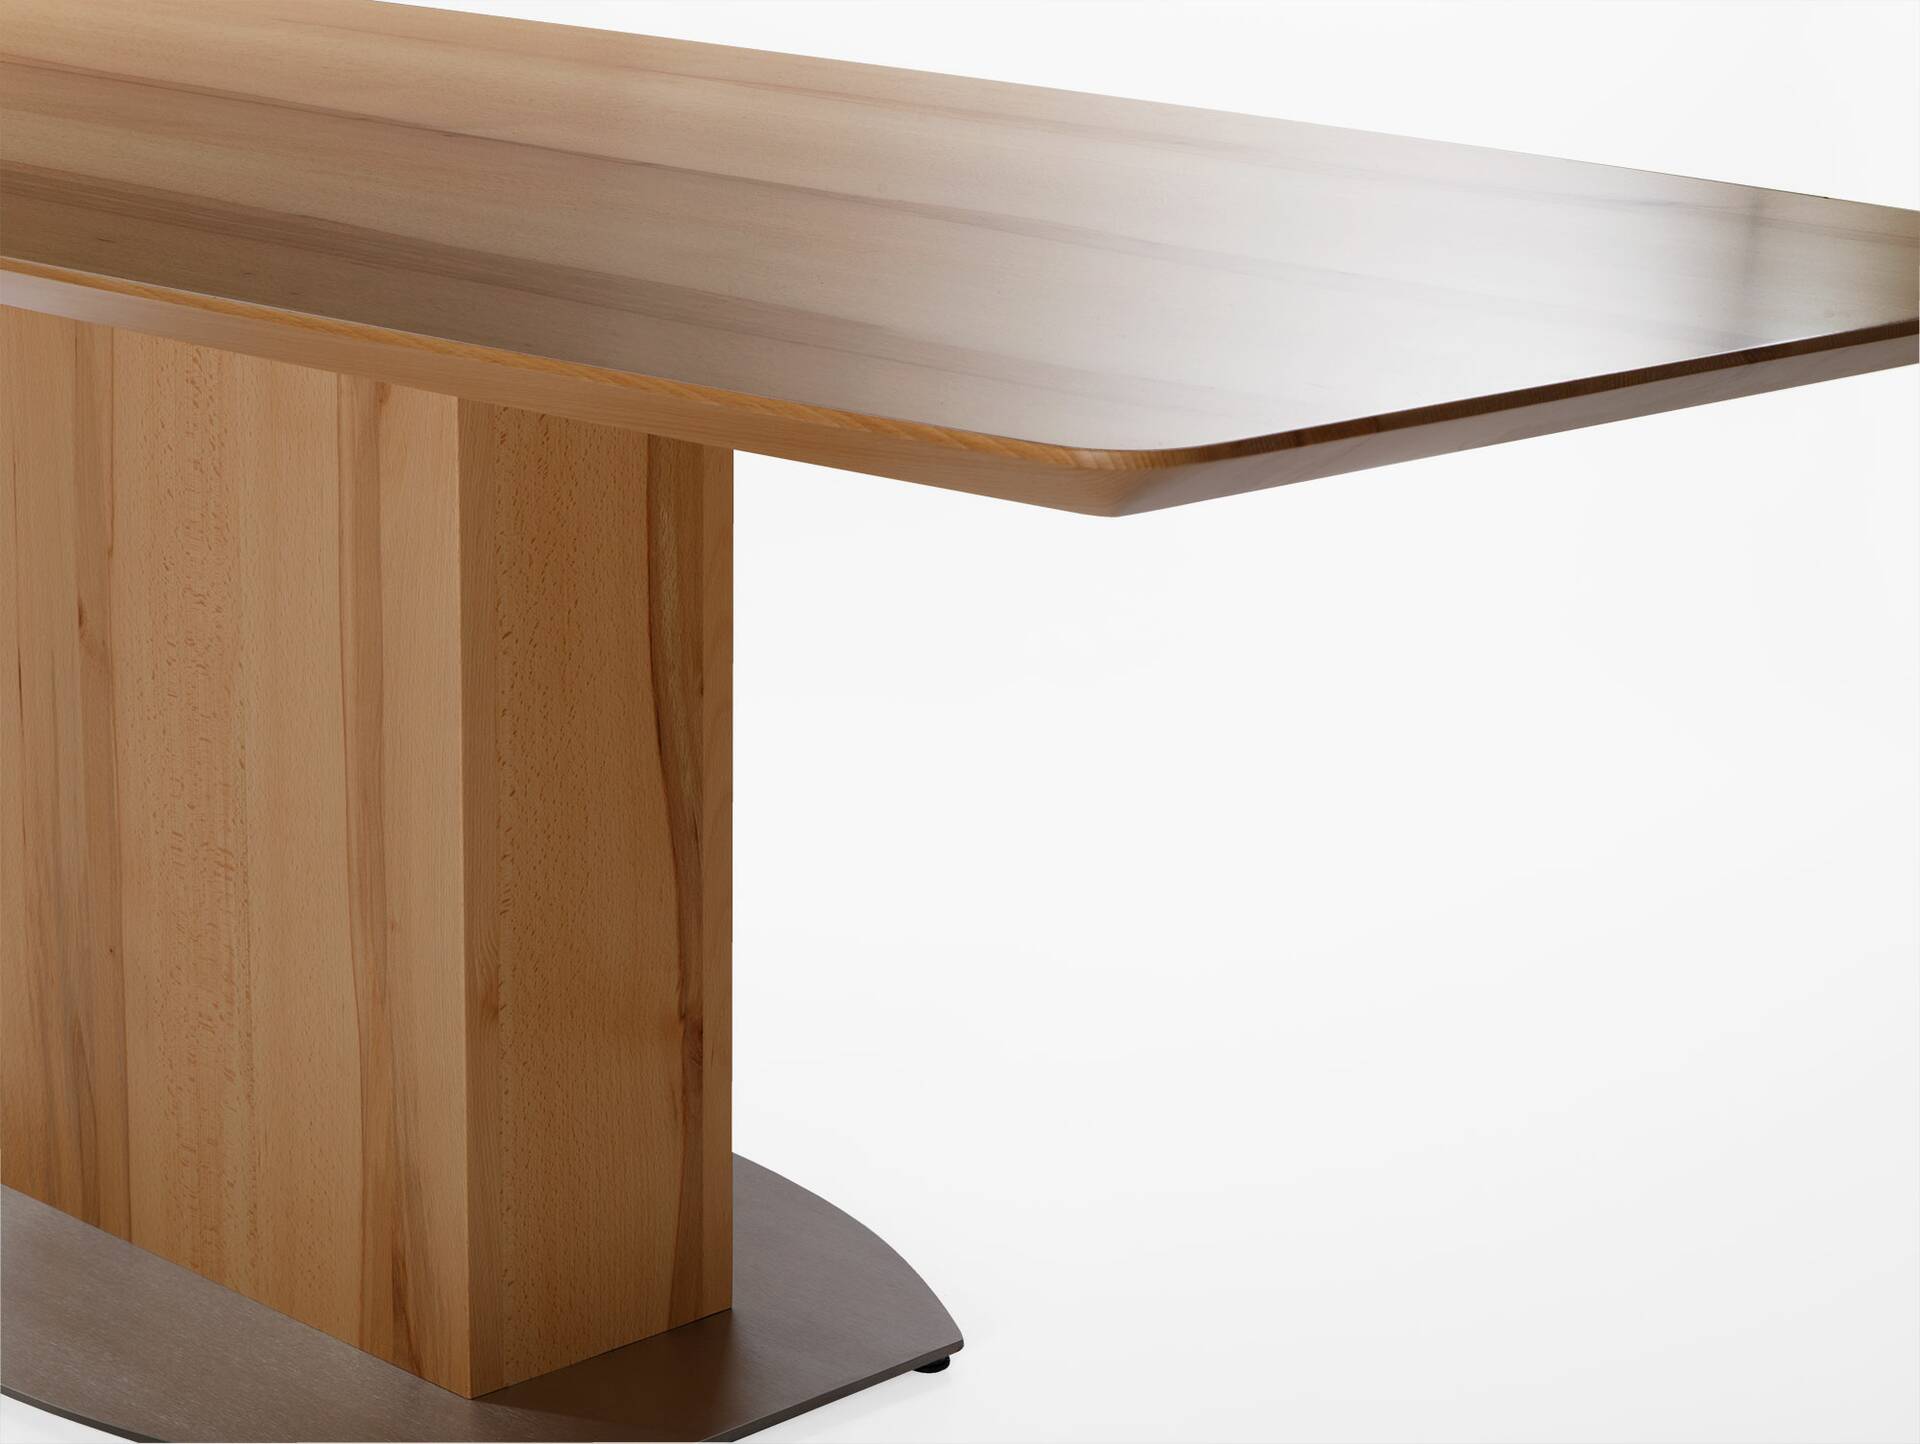 TALINA Maßesstisch / Säulenesstisch, Material Massivholz/Edelstahl 